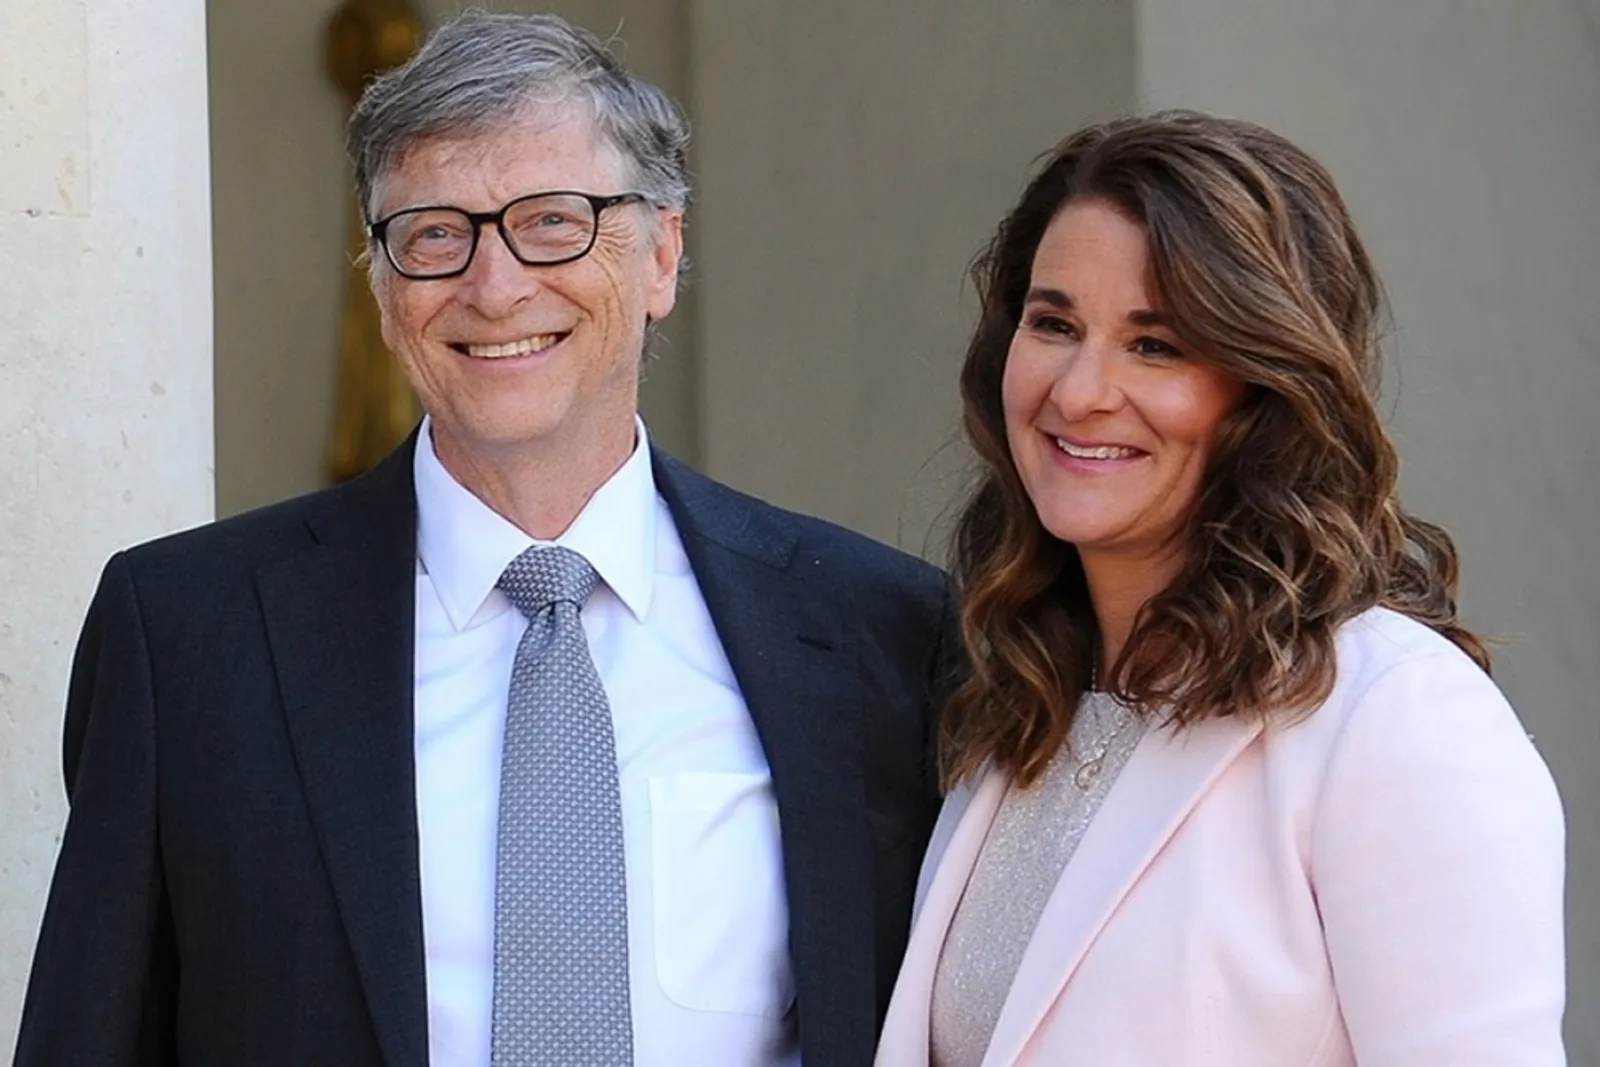 Terbongkar! Ini 5 Fakta Perselingkuhan Bill Gates Sebelum Bercerai